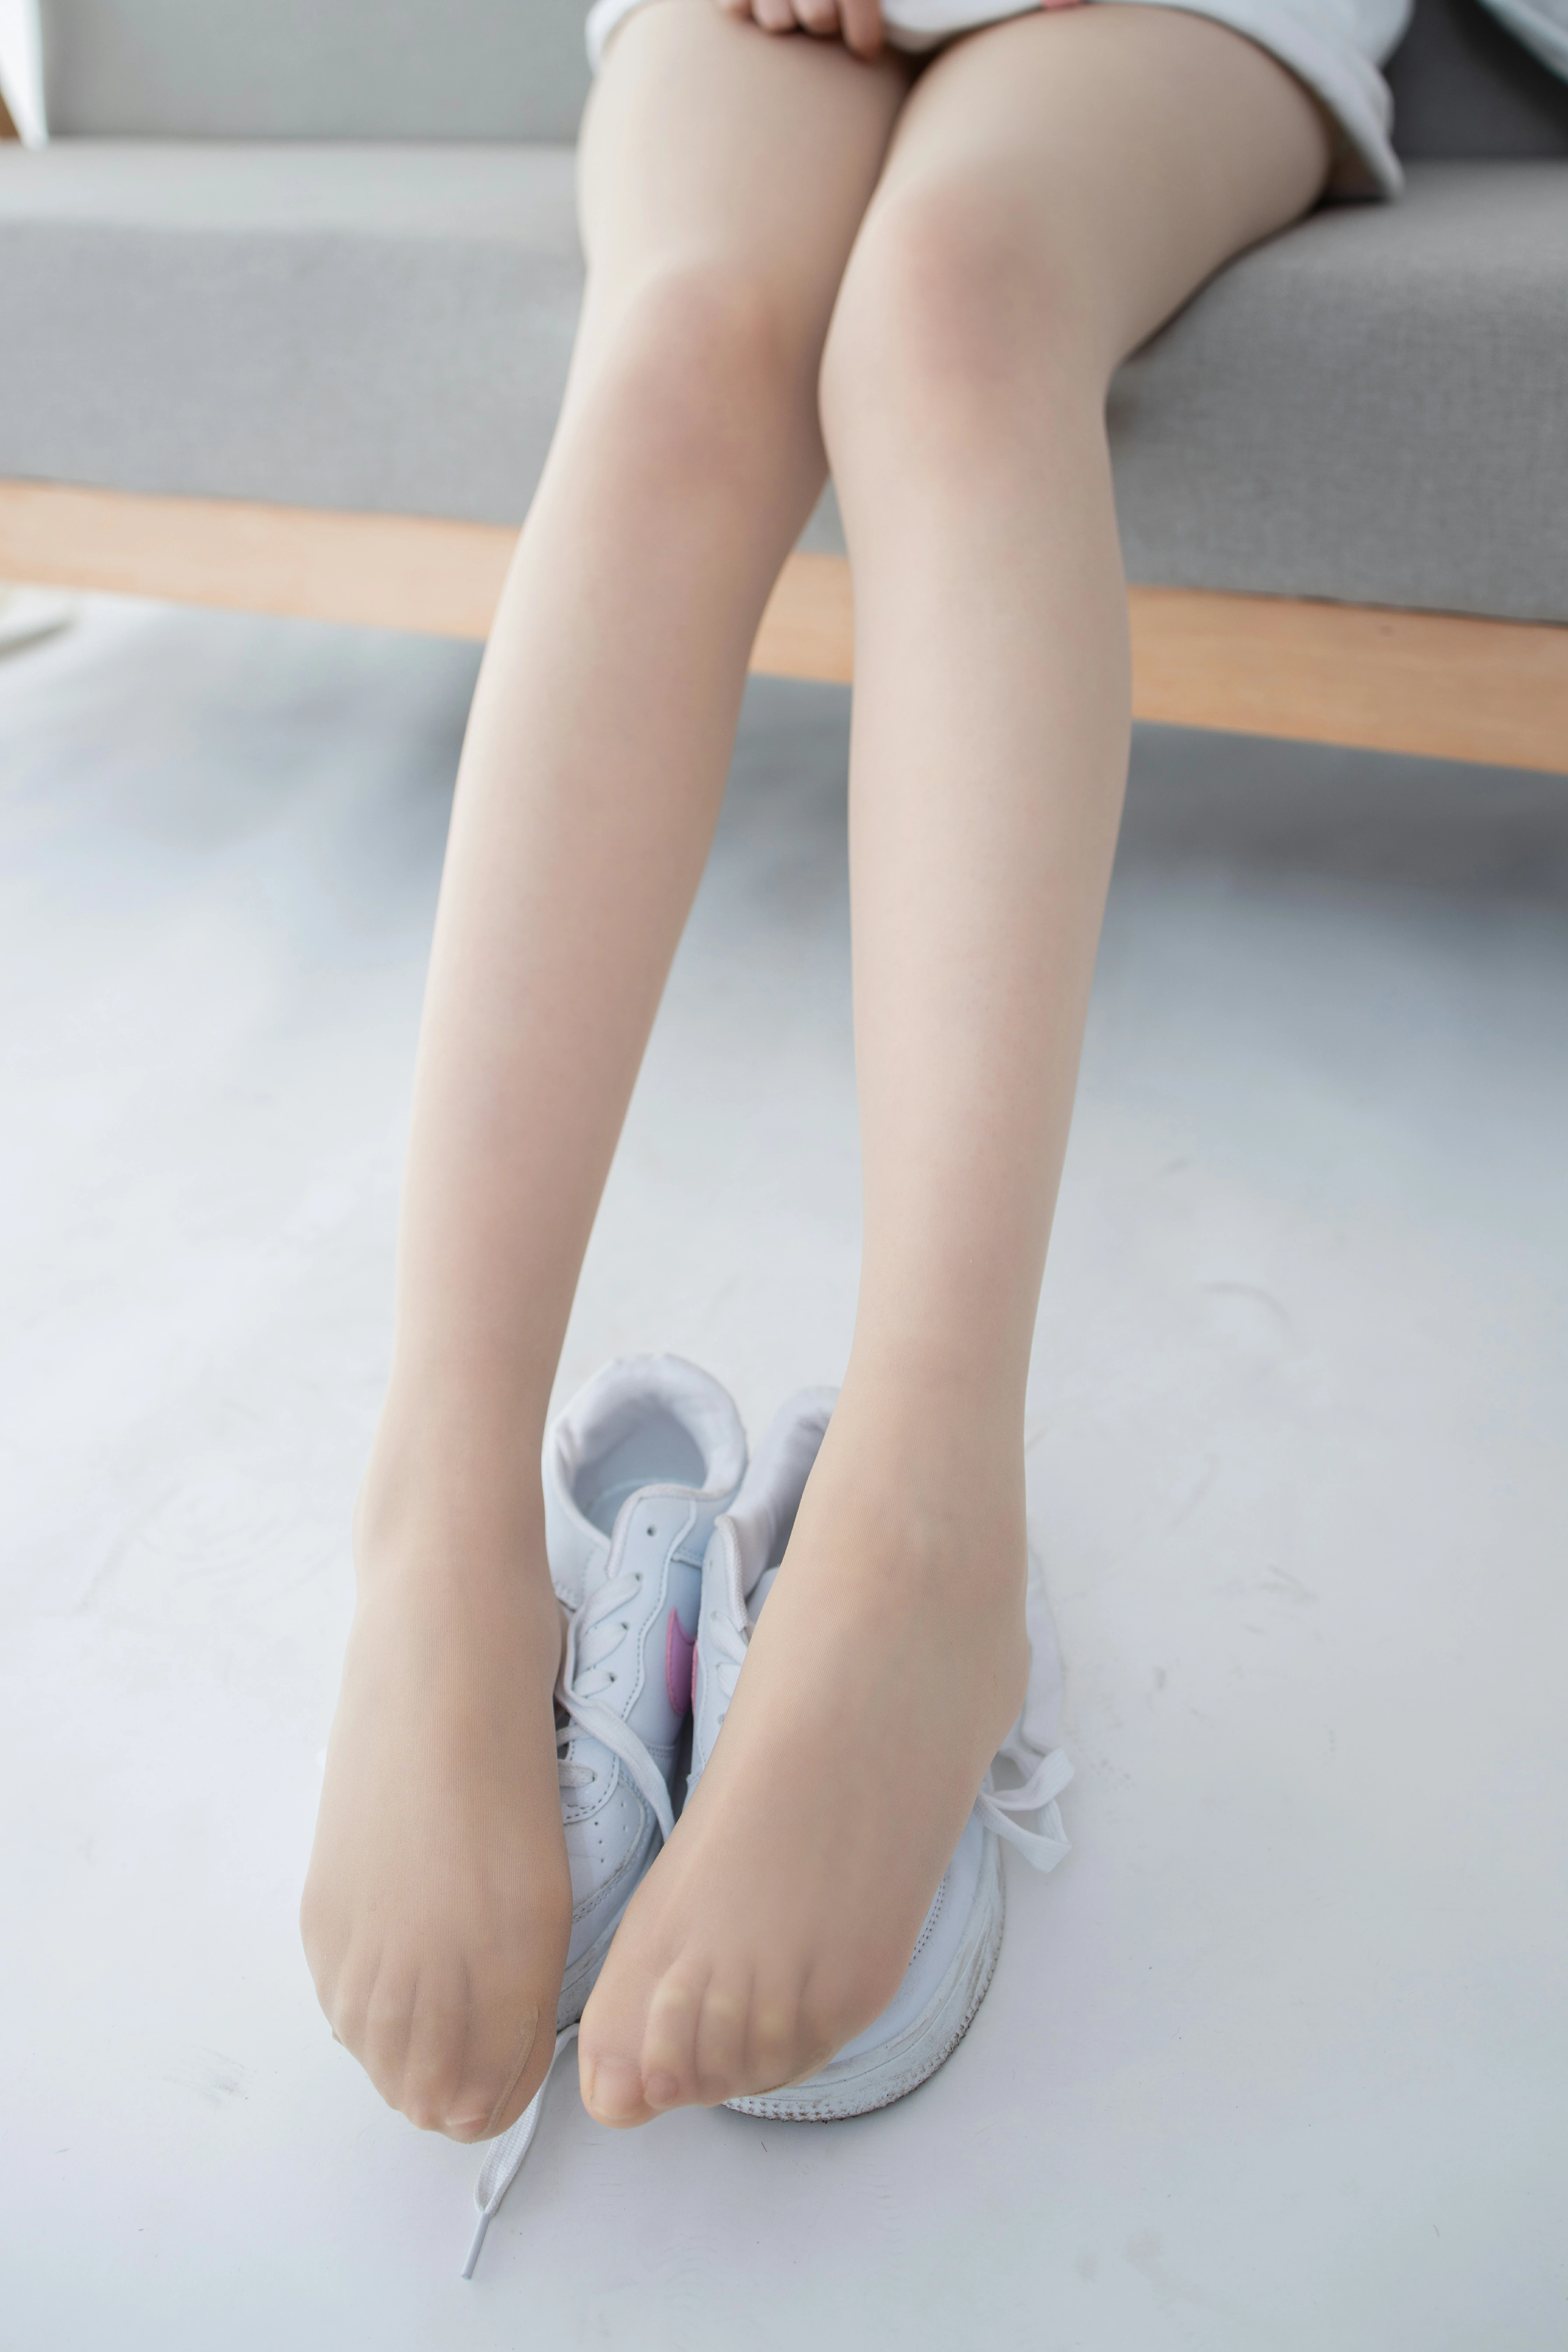 [森萝财团]JKFUN-百元系列2-1《运动鞋》13D肉丝 Aika 白色卫衣加肉色丝袜美腿性感私房写真集,